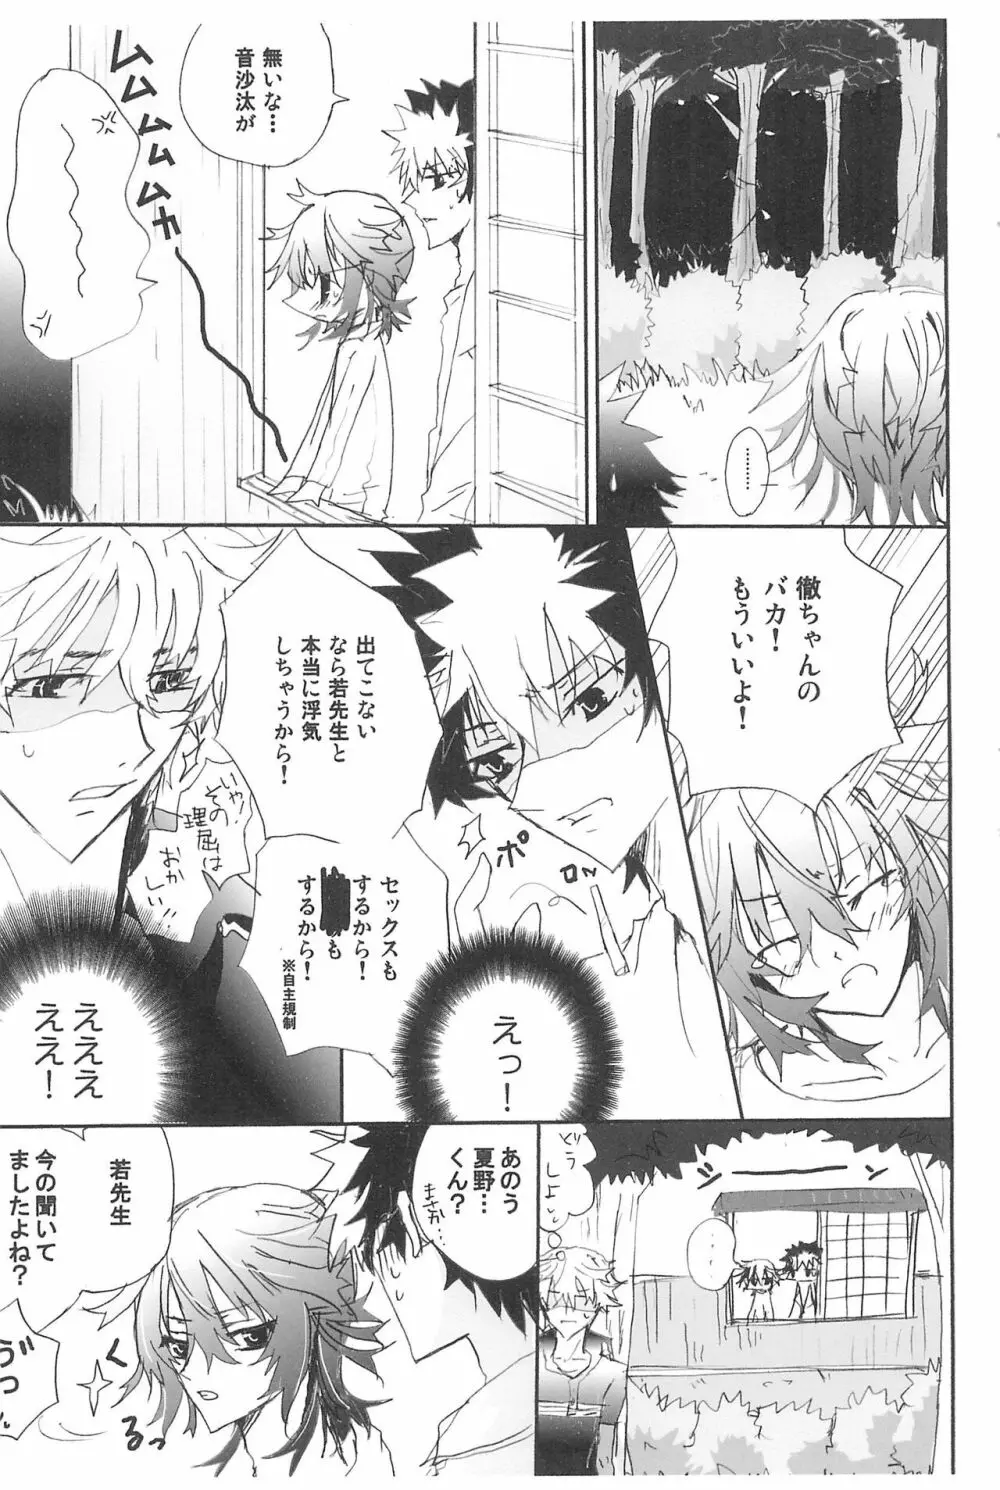 Shiki-hon 10 11ページ